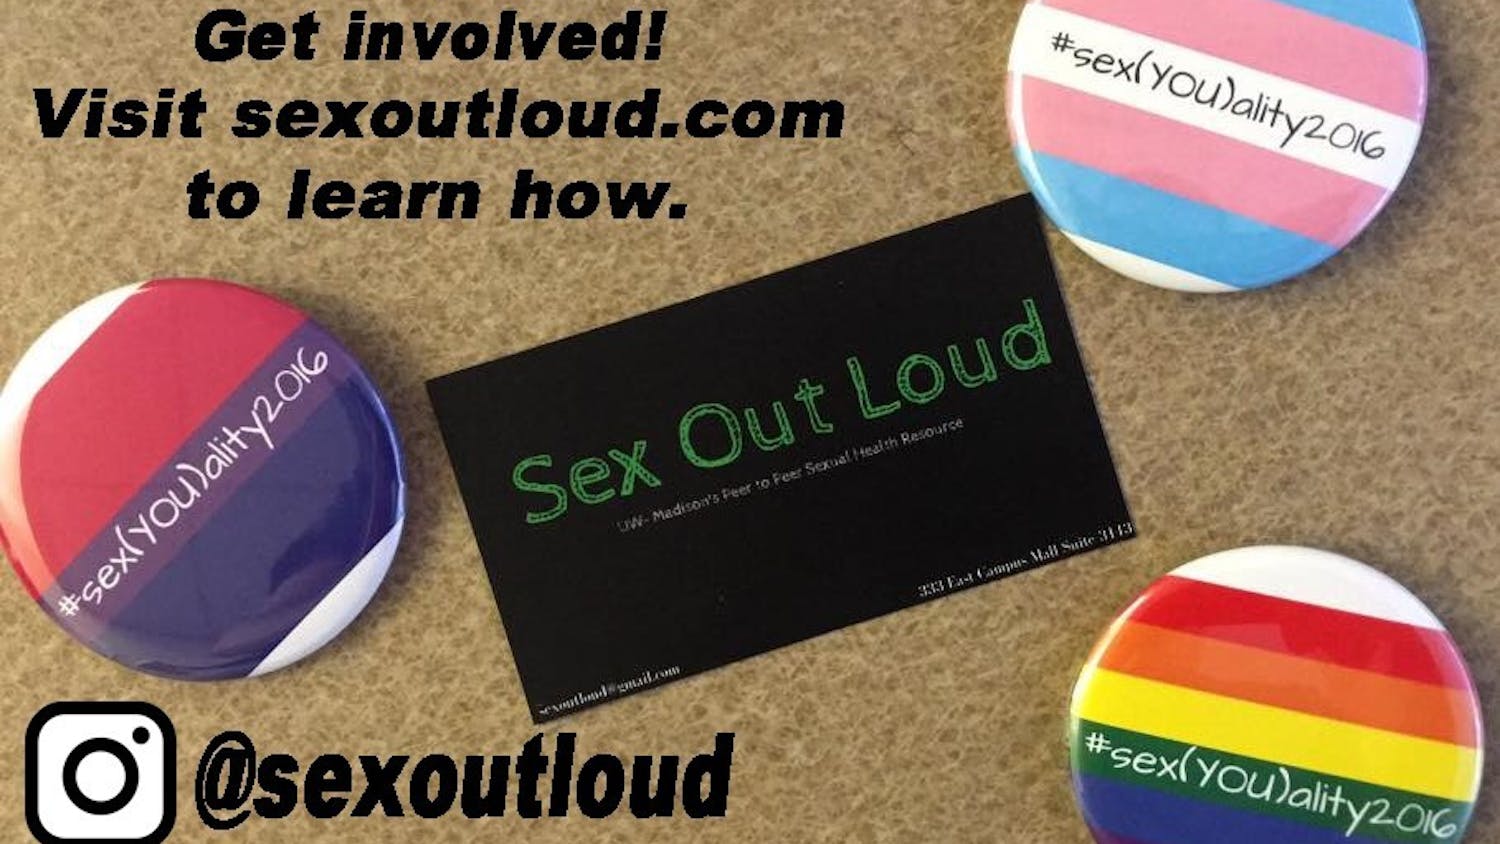 sex out loud.jpg